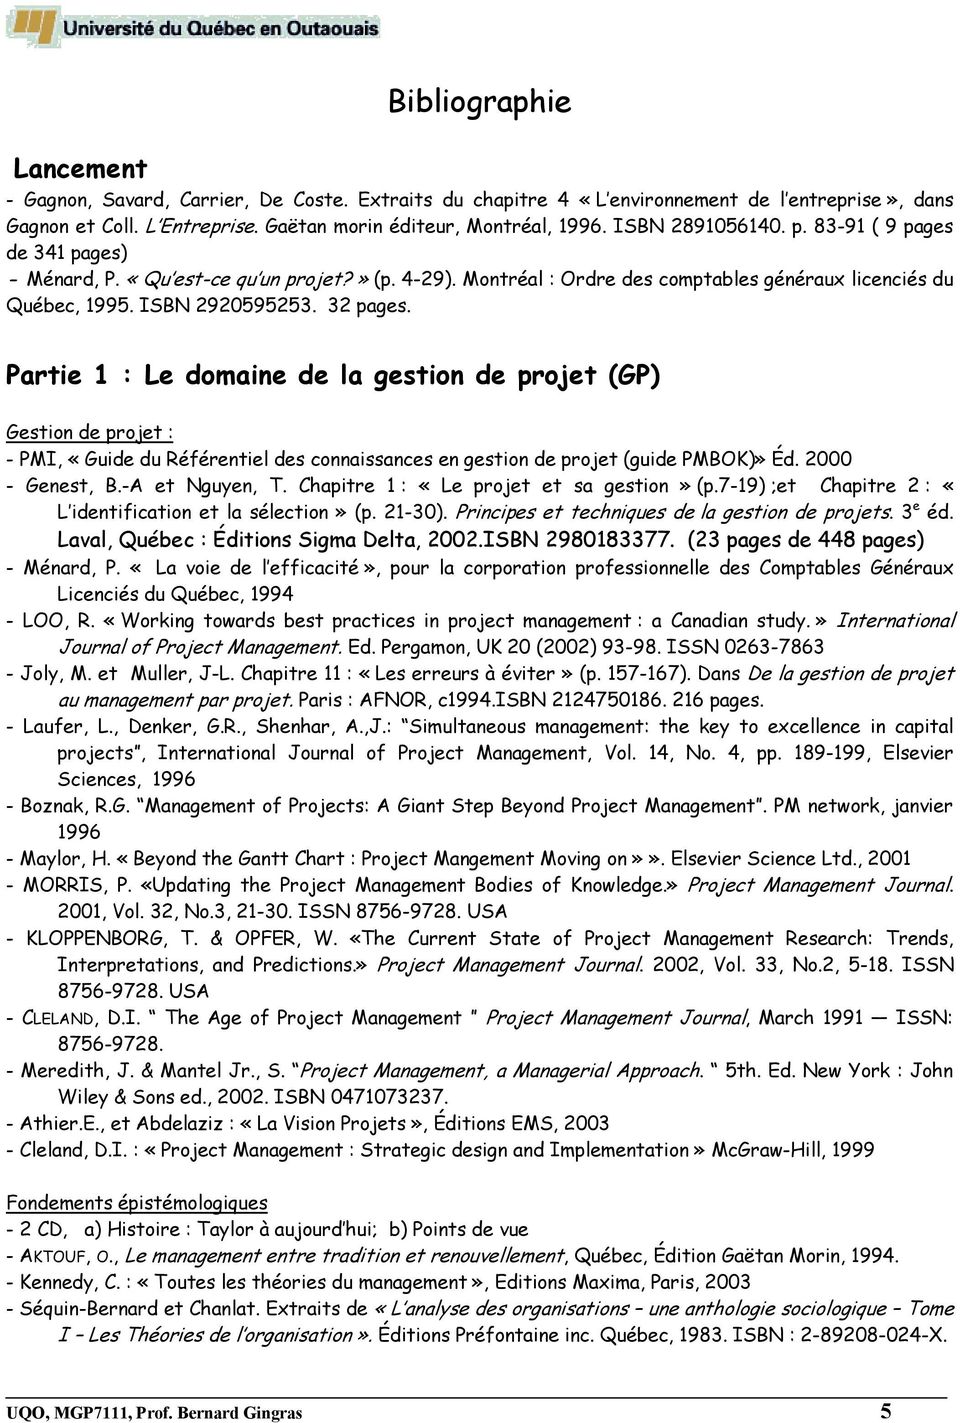 Partie 1 : Le domaine de la gestion de projet (GP) Gestion de projet : - PMI, «Guide du Référentiel des connaissances en gestion de projet (guide PMBOK)» Éd. 2000 - Genest, B.-A et Nguyen, T.